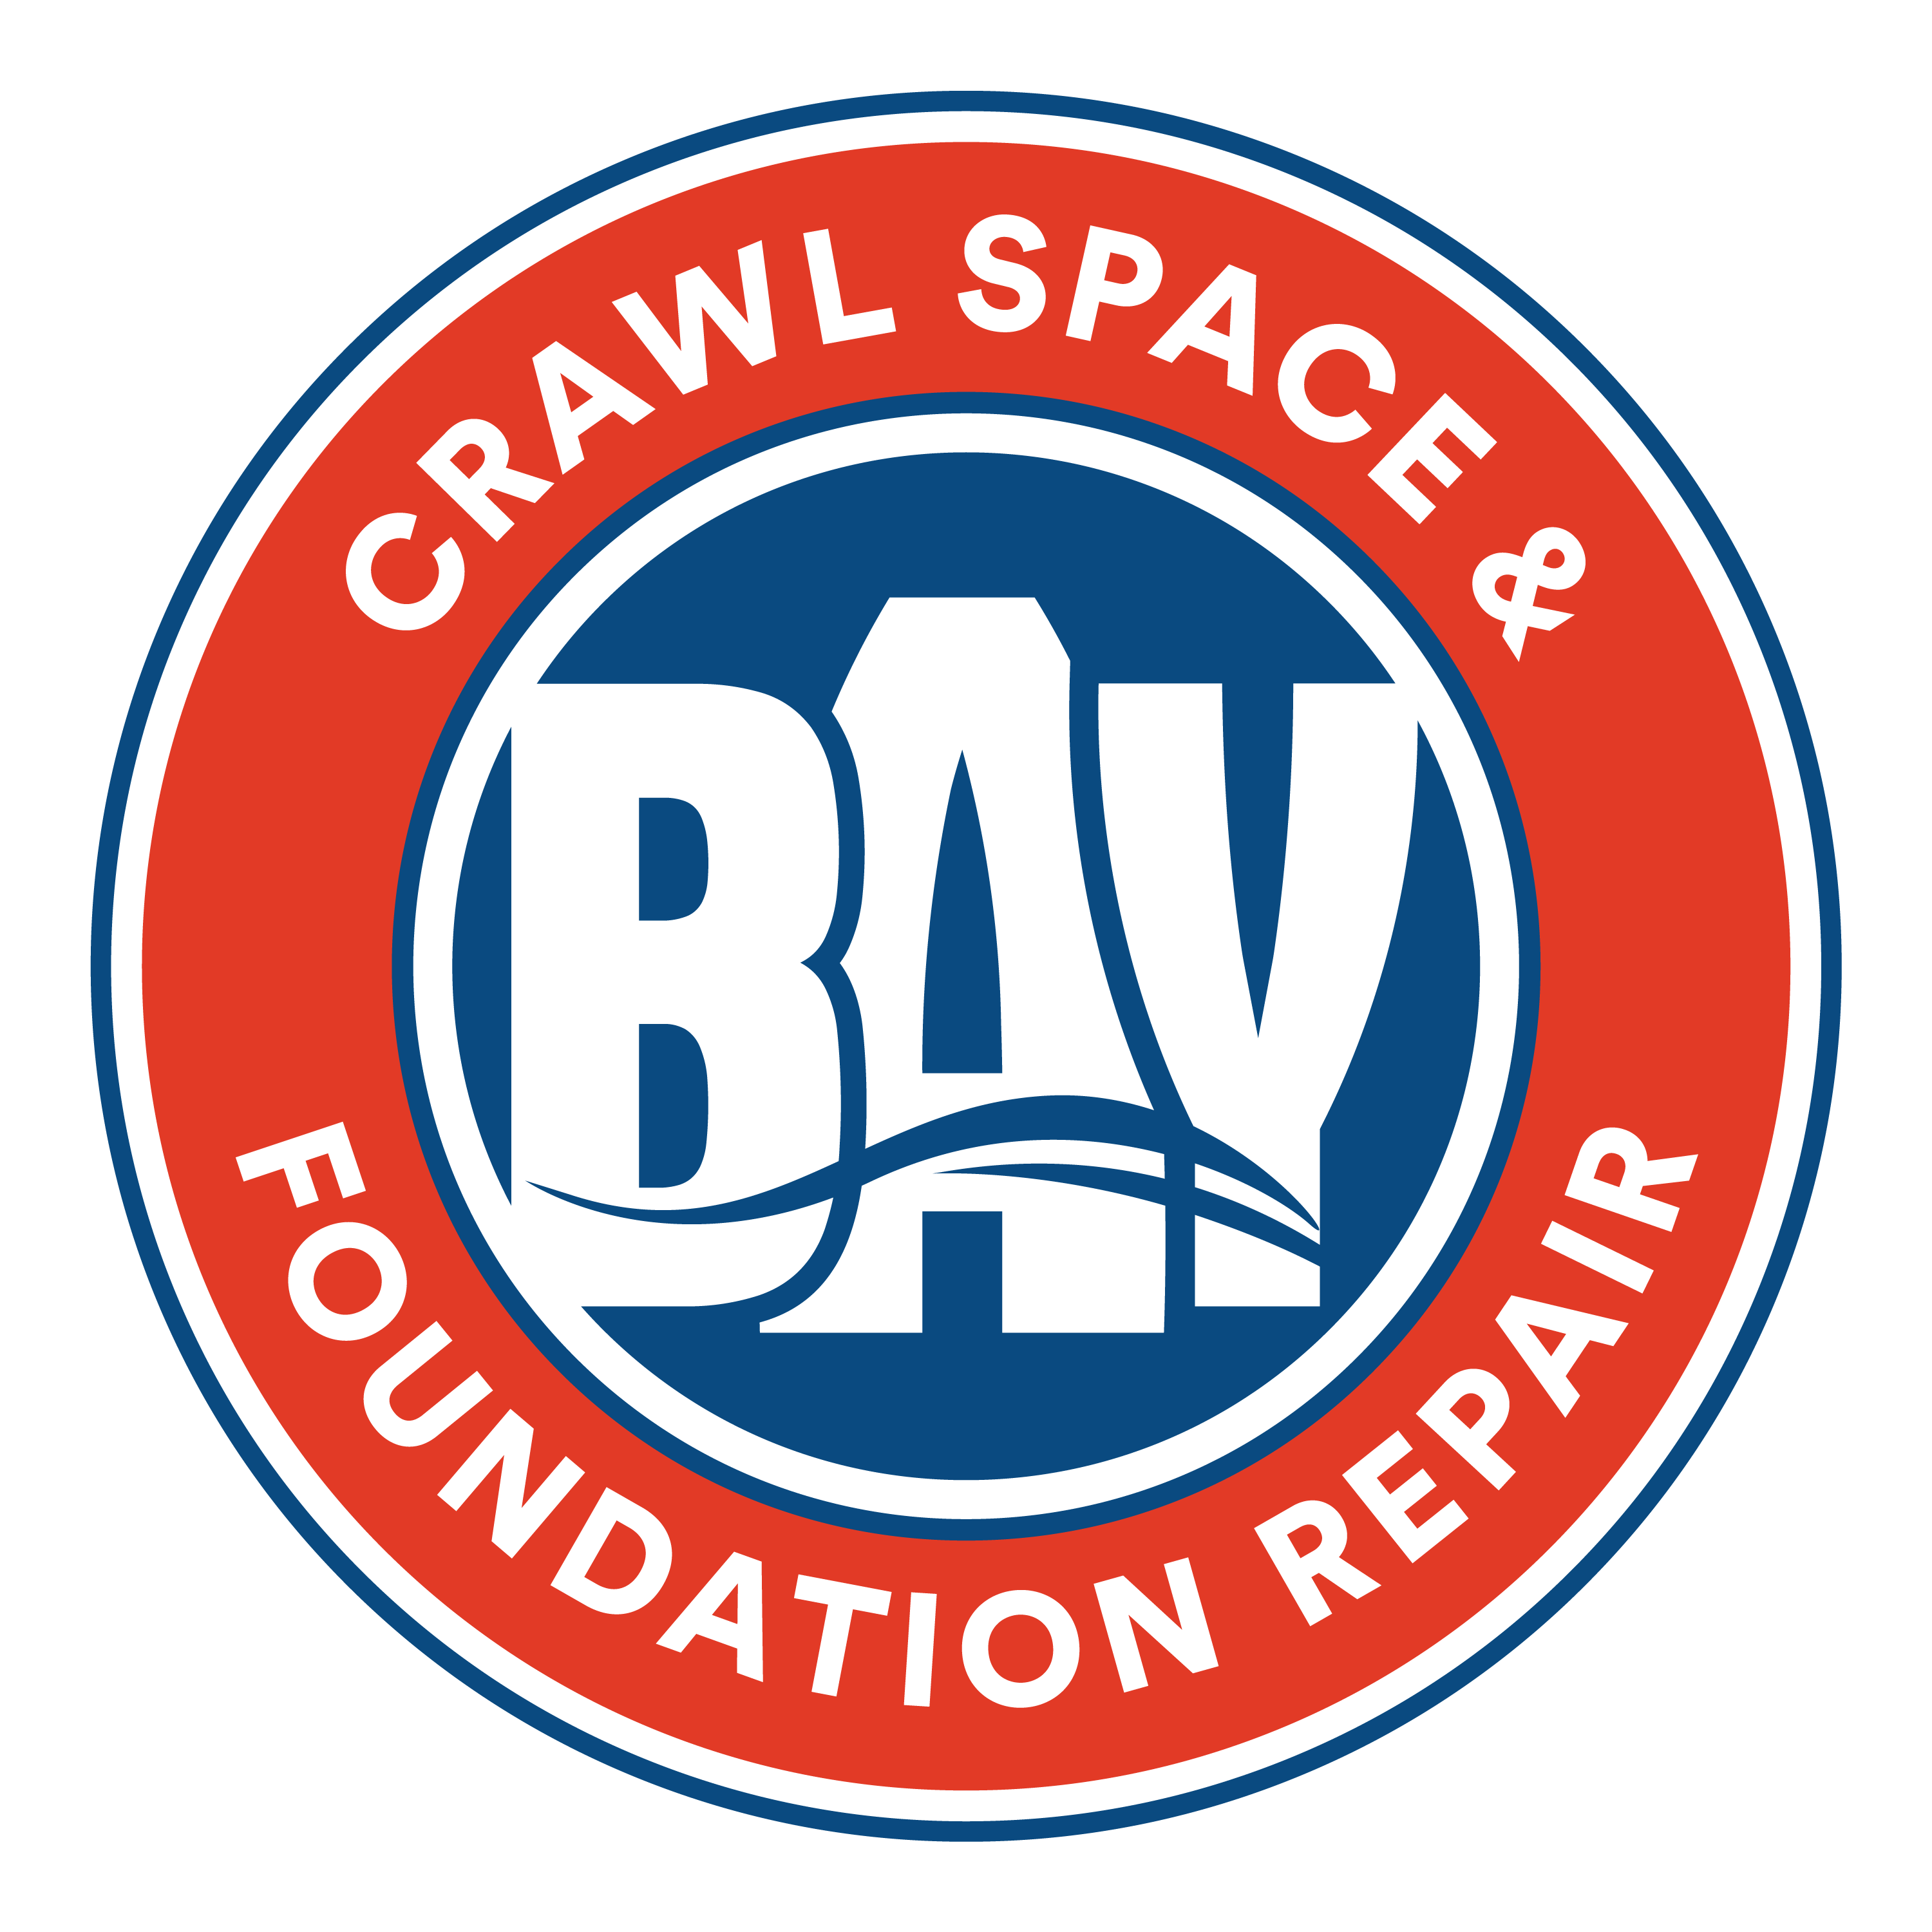 BAY Crawl Space & Foundation Repair Logo